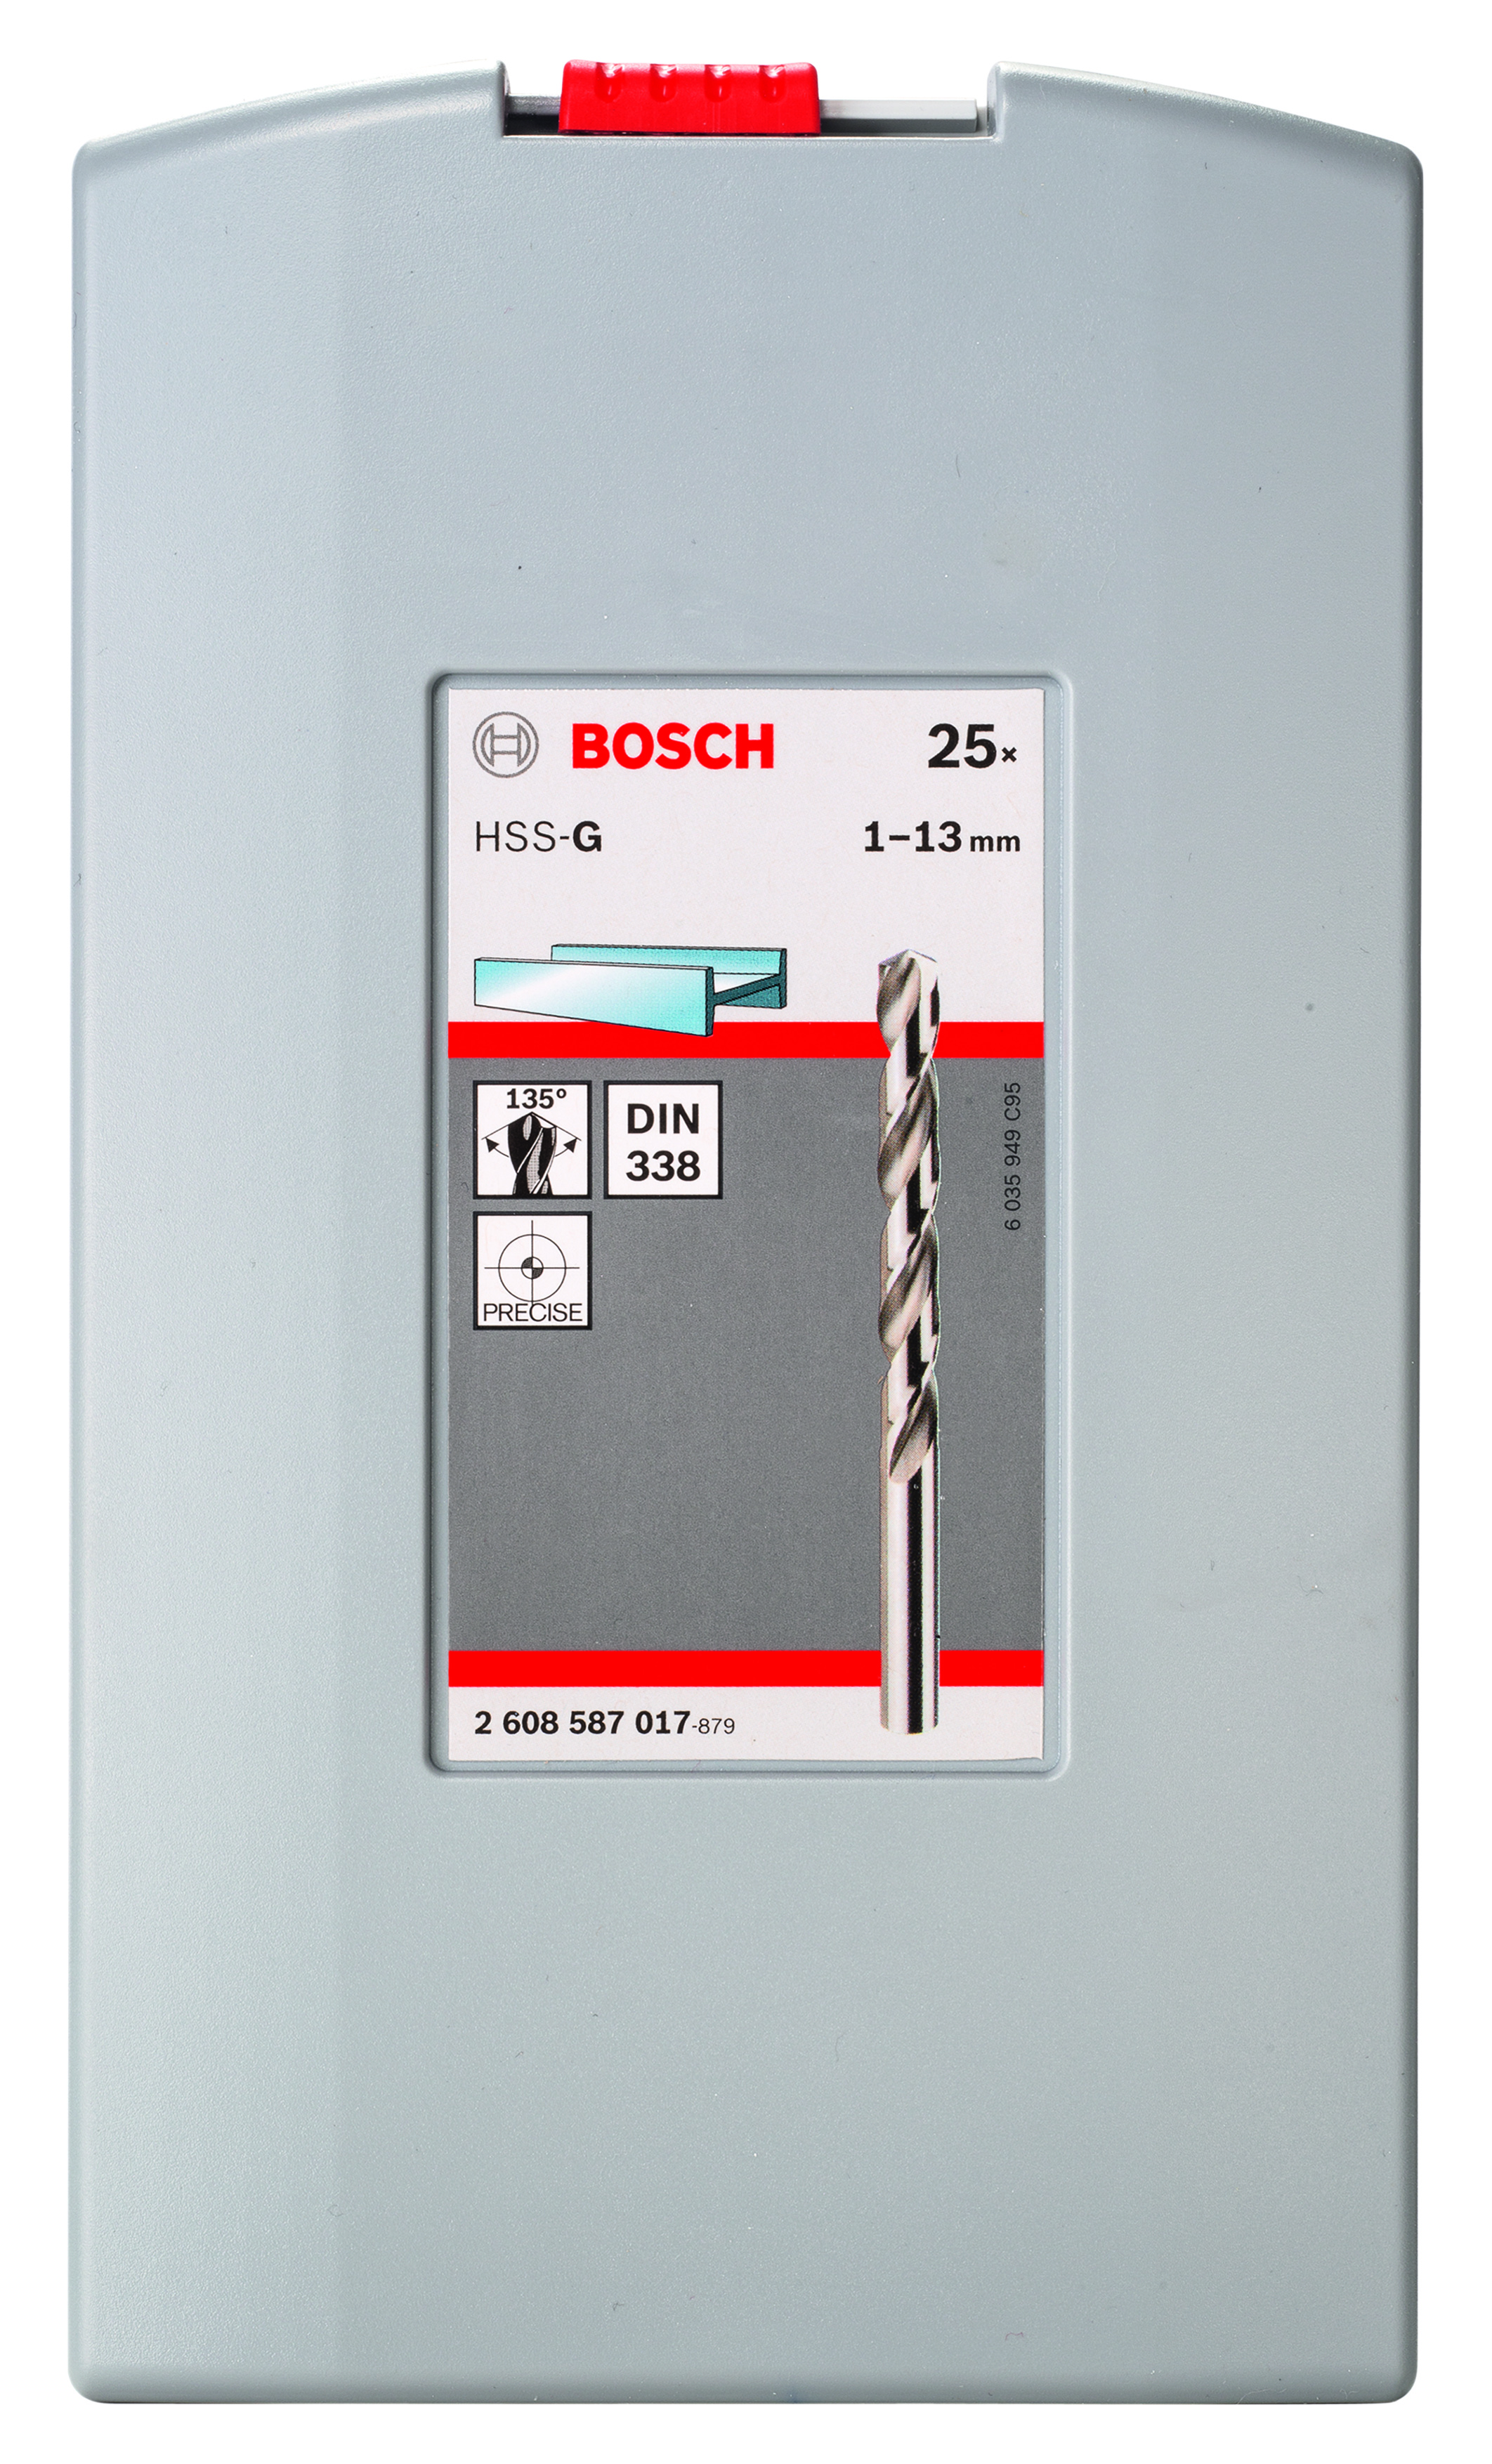 BOSCH Metallbohrer-Set Robust Line HSS-G DIN 135 135°, 